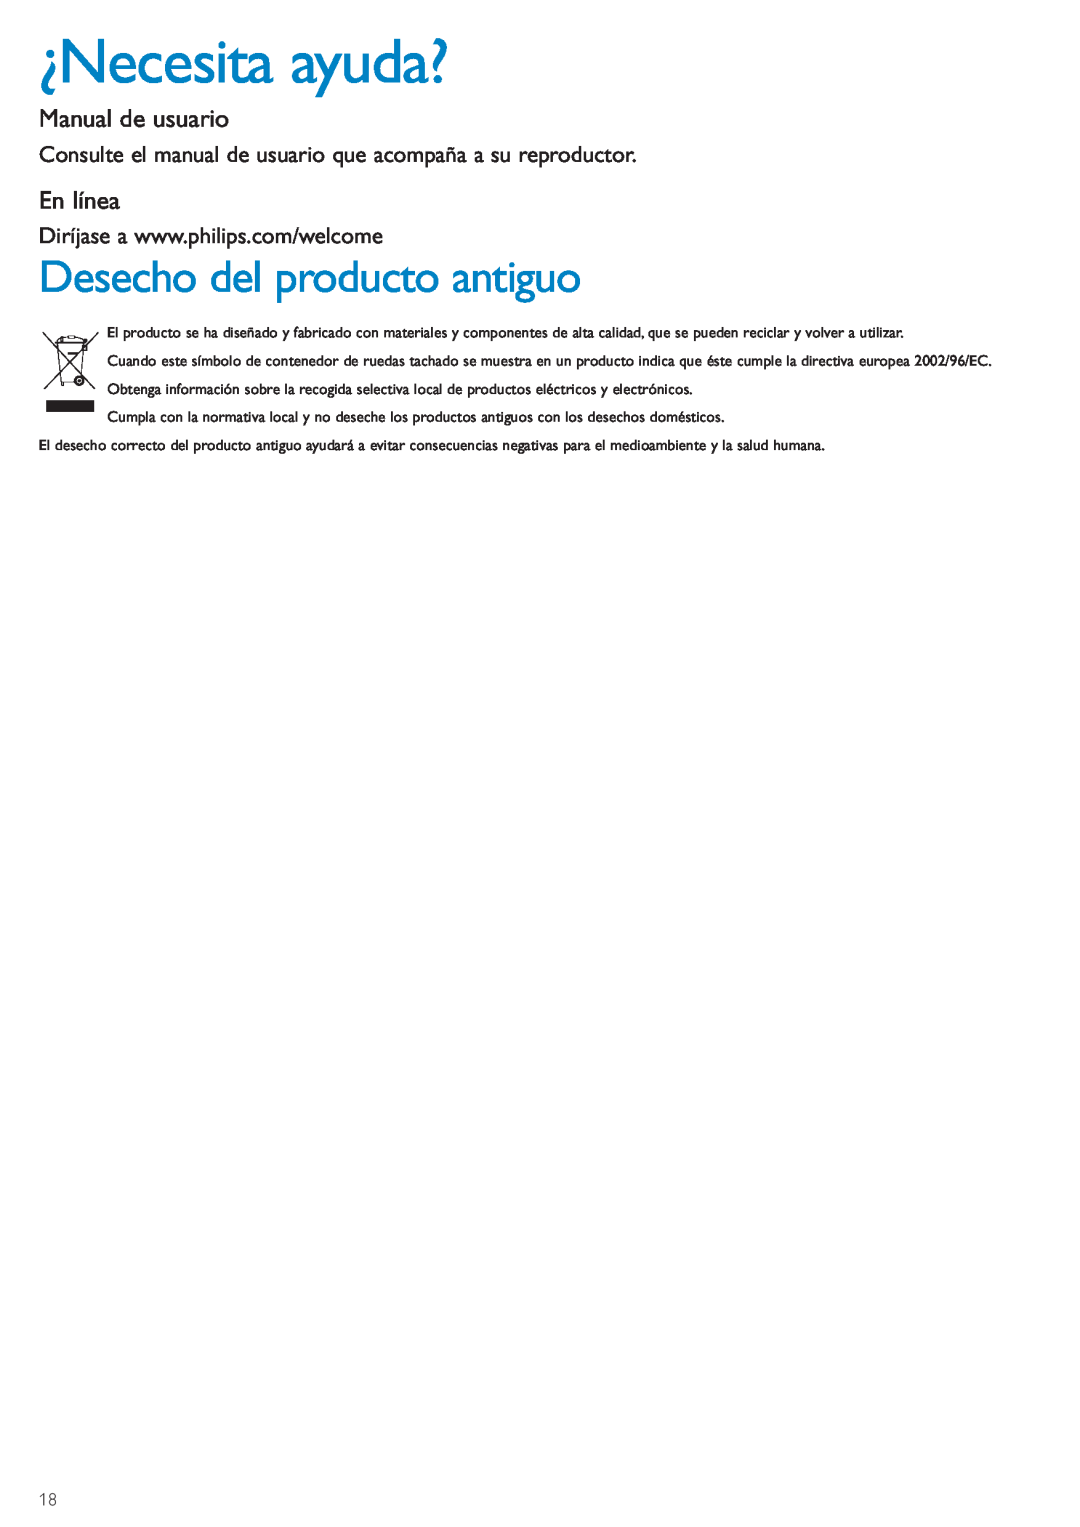 Philips WACS7500 manual ¿Necesita ayuda?, Desecho del producto antiguo, Manual de usuario, En línea 